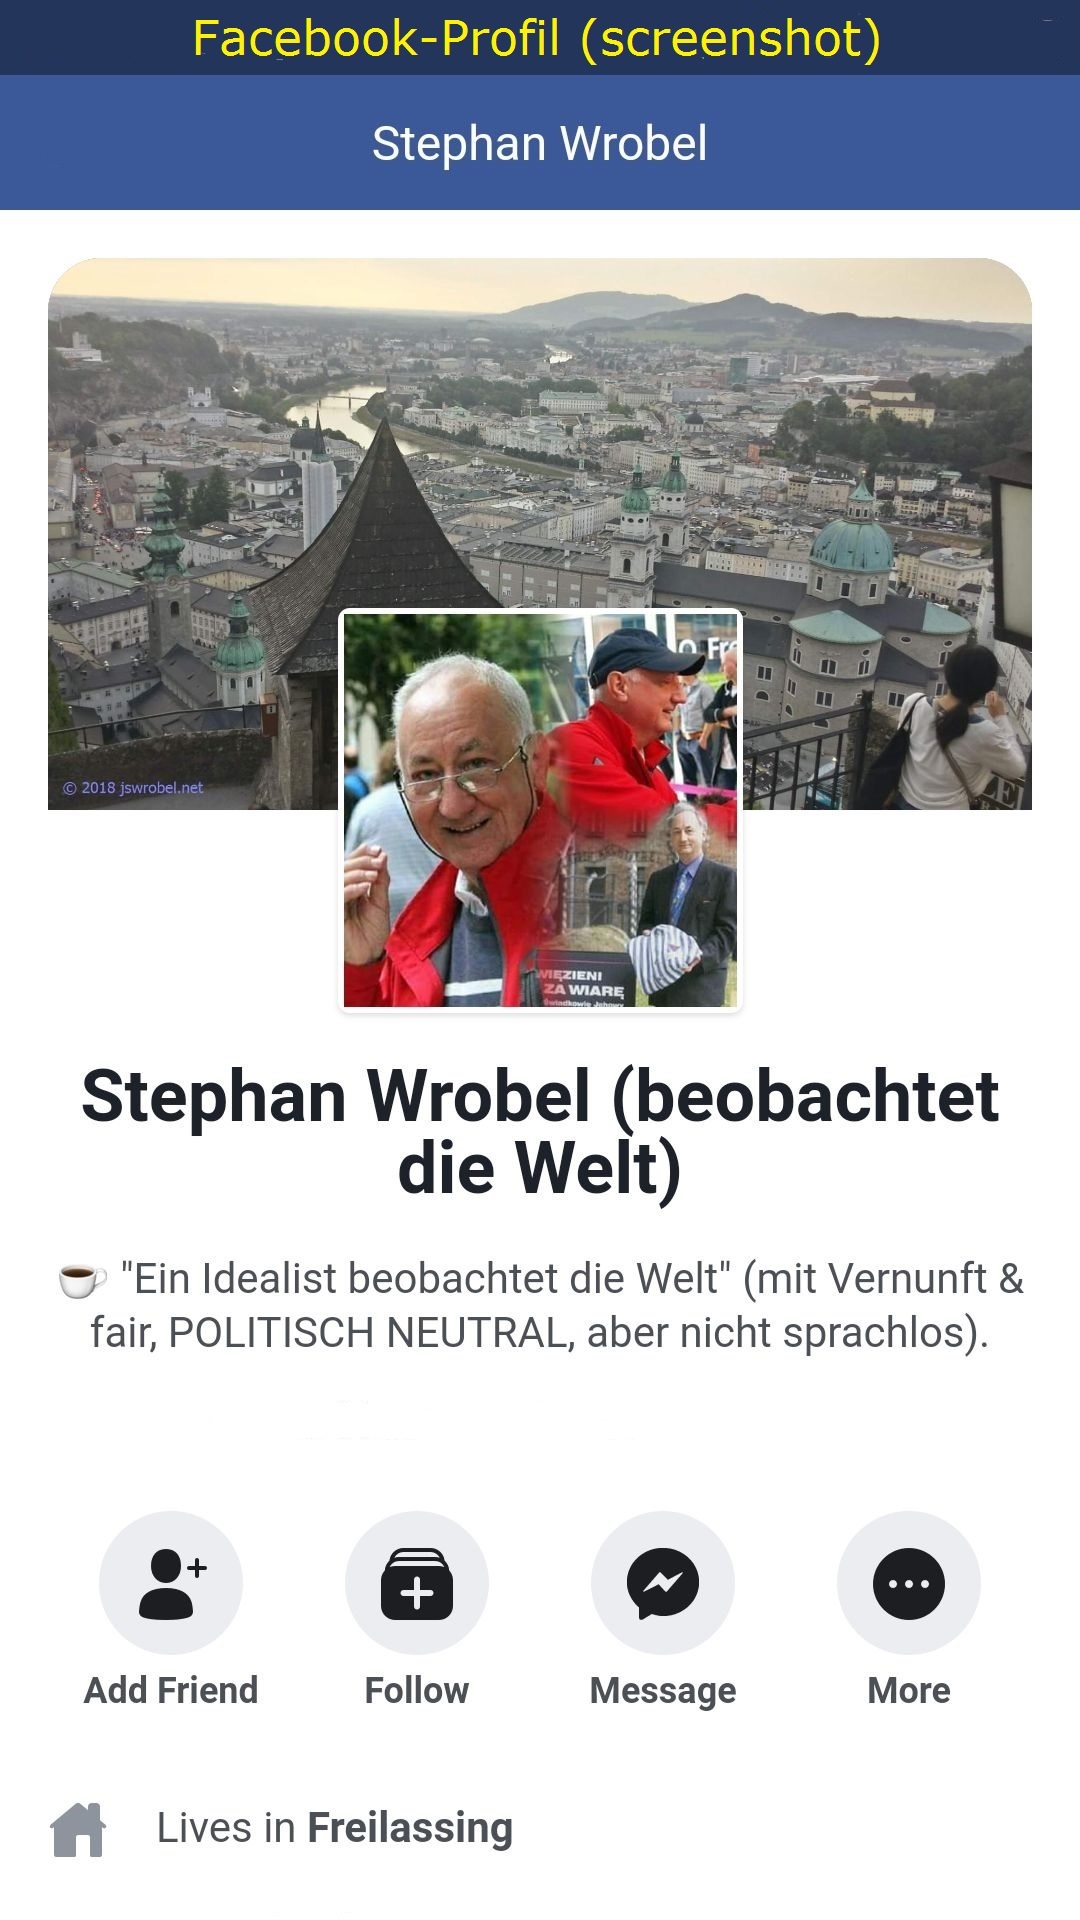 Facebook-Profil "Stephan Wrobel (beobachtet die Welt)"